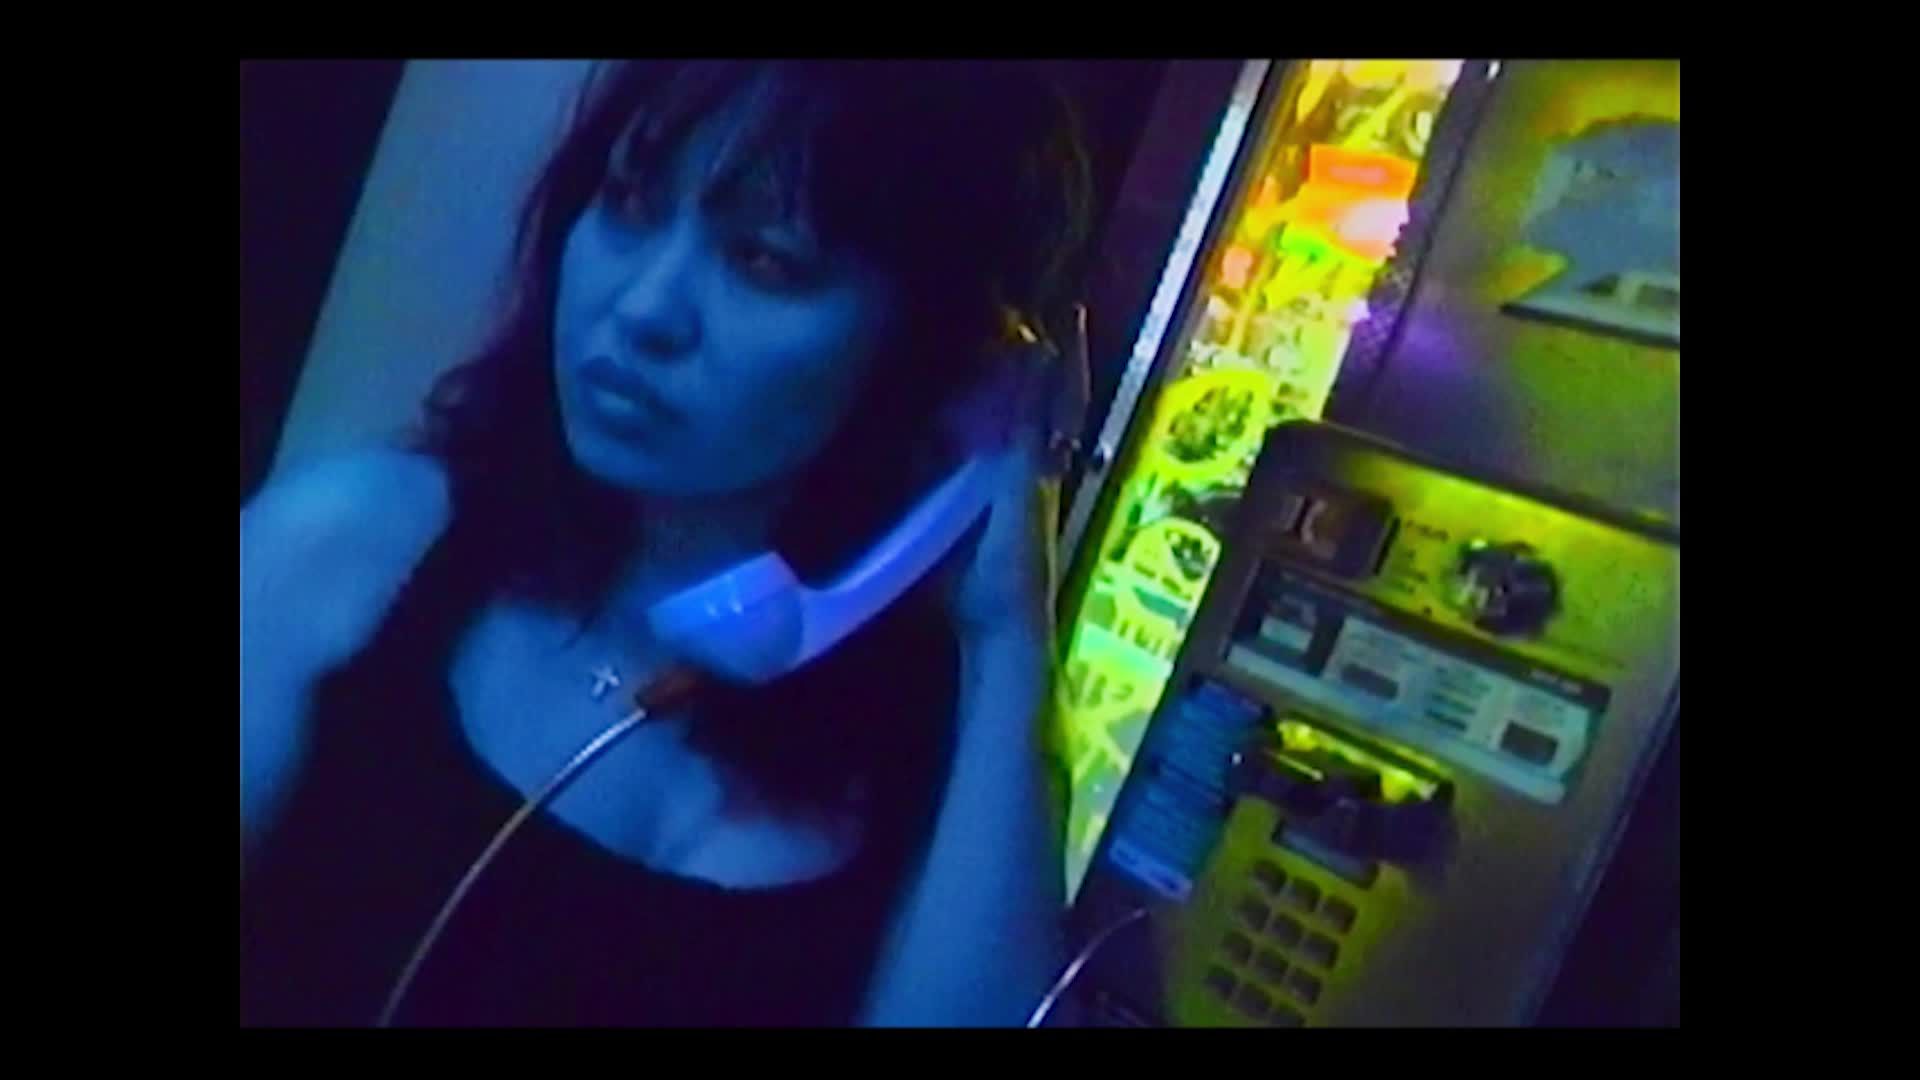 SALI OGURI - Private Dreams (2003)